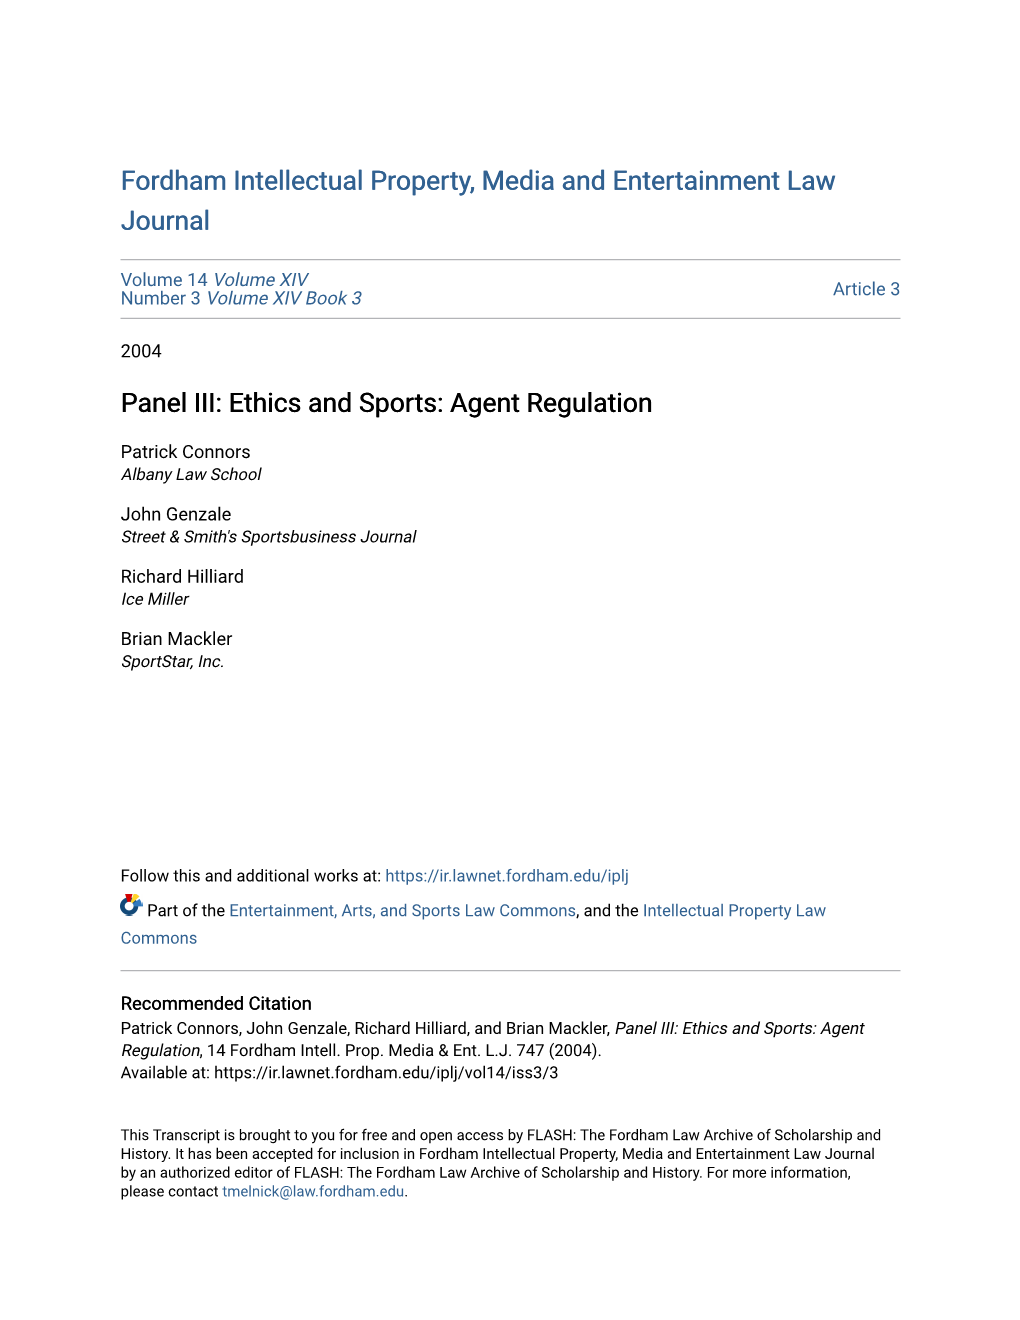 Panel III: Ethics and Sports: Agent Regulation